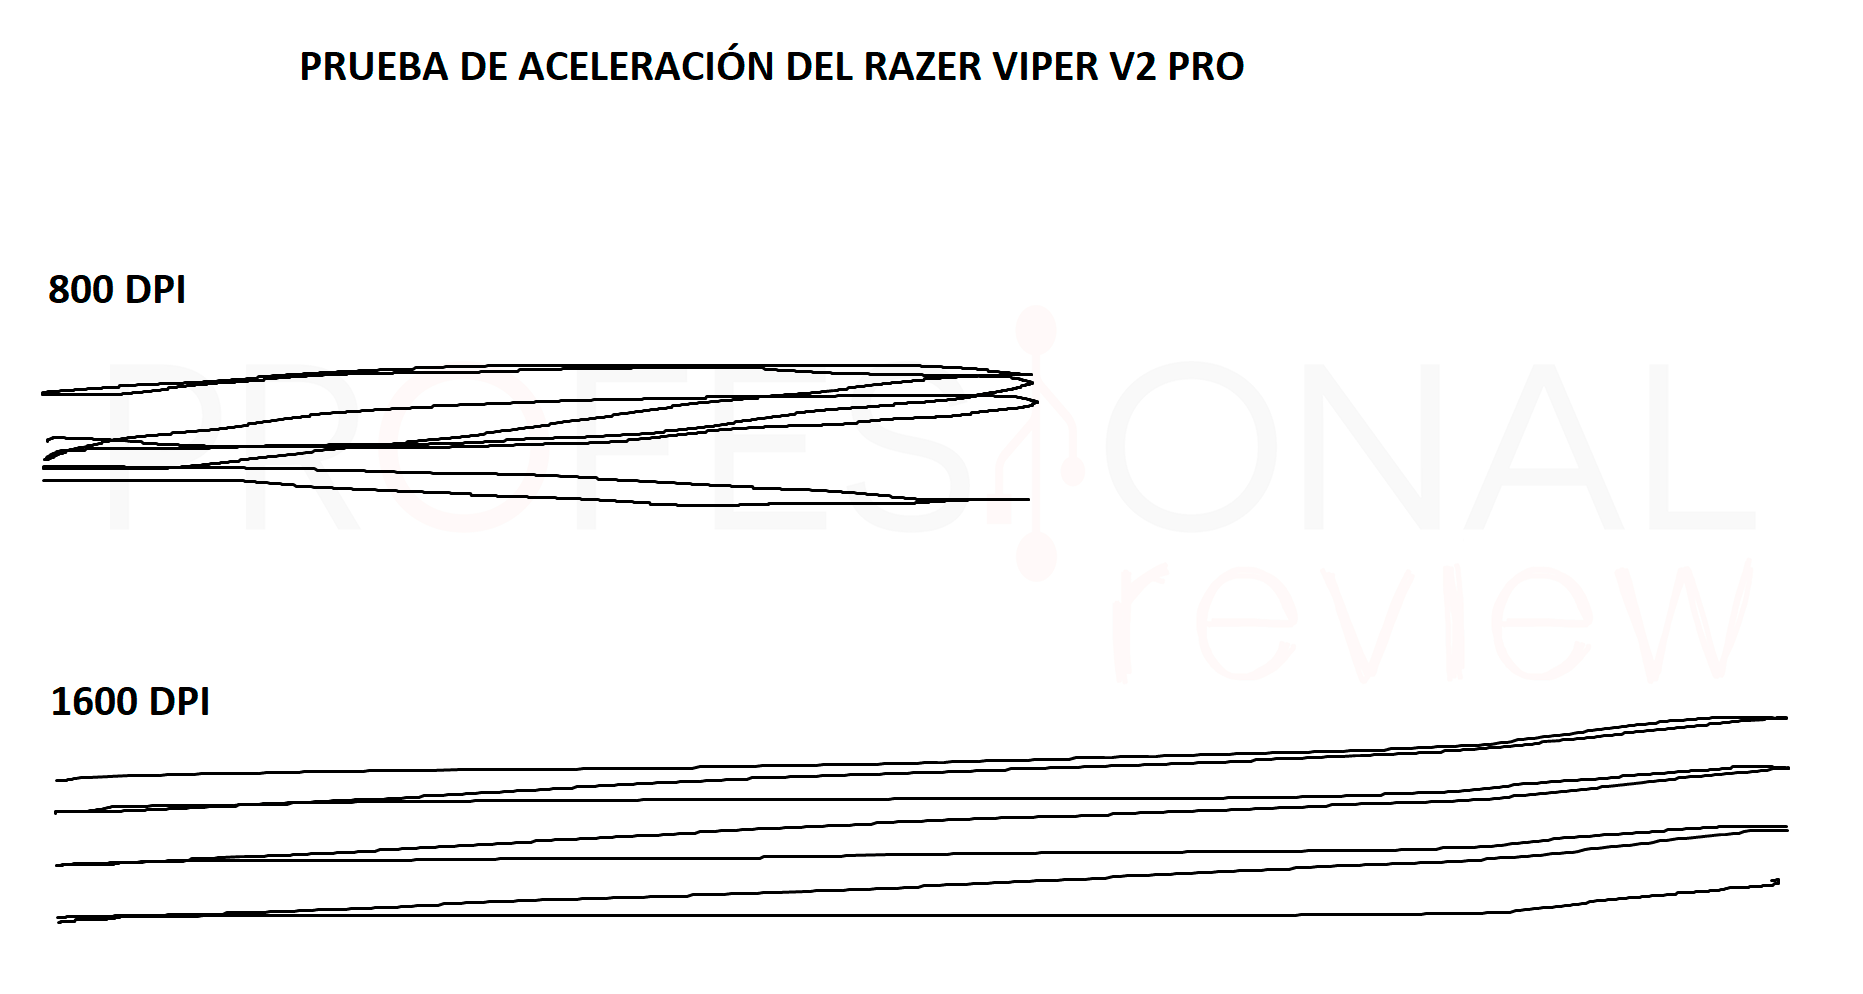 Razer Viper V2 Pro Review